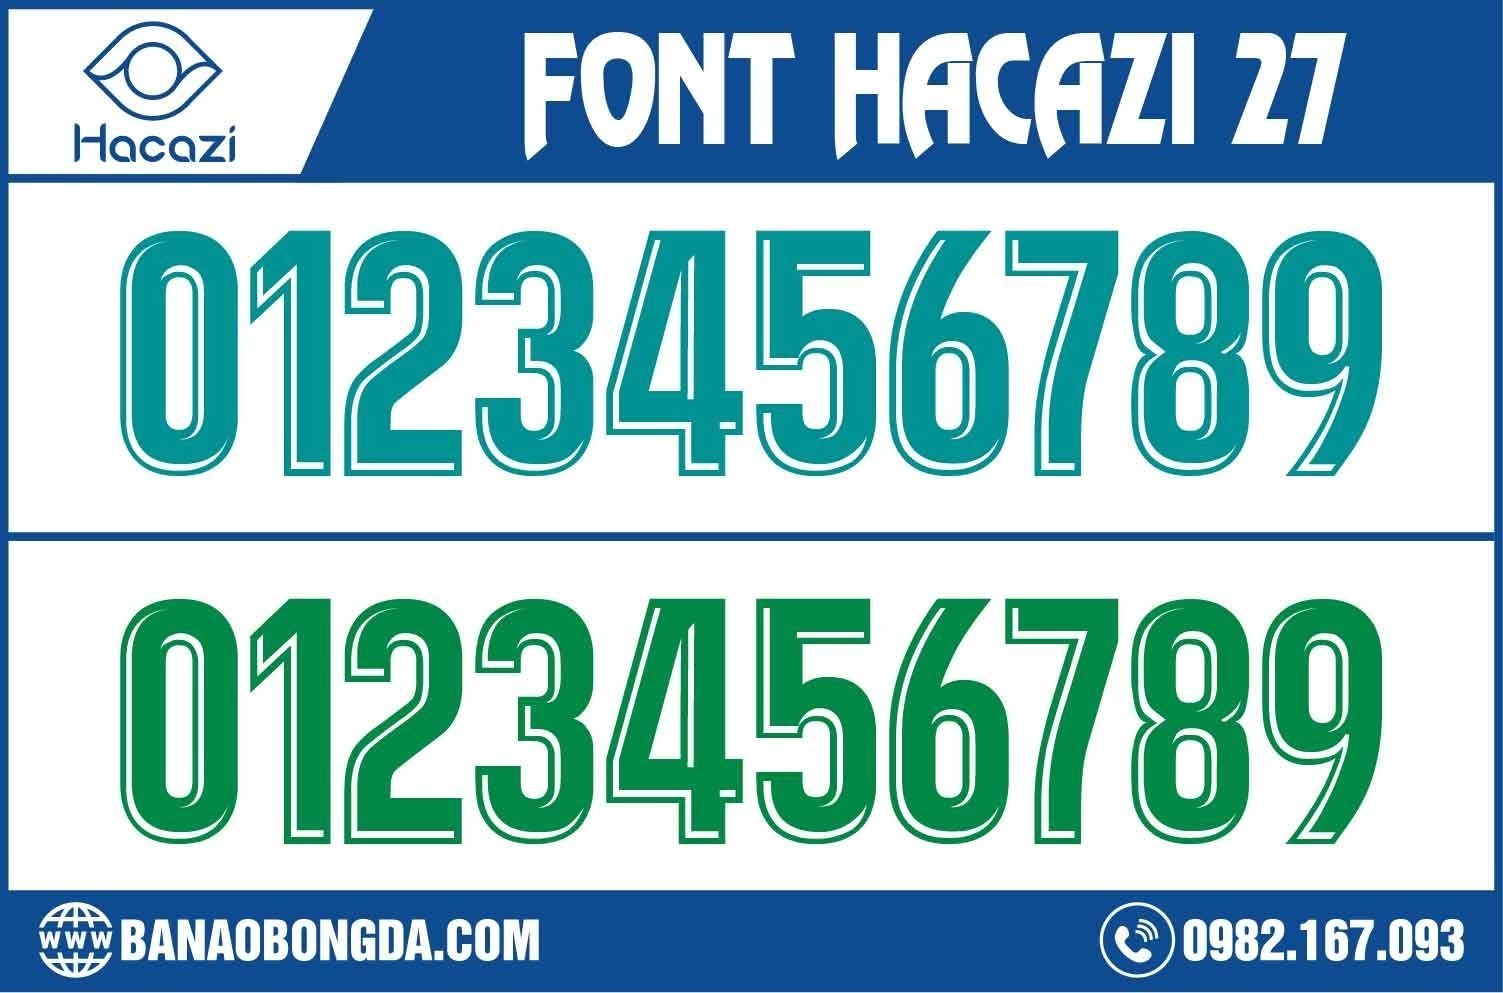  Tiếp tục là những mẫu font phong cách được ra mắt liên tục nằm trong bộ sưu tập mới. Font số áo bóng đá 27 là đứa con tinh thần được Shop Hacazi Sport chúng tôi nâng niu và lựa chọn giới thiệu đến mọi người trong mùa giải 2023 này. 